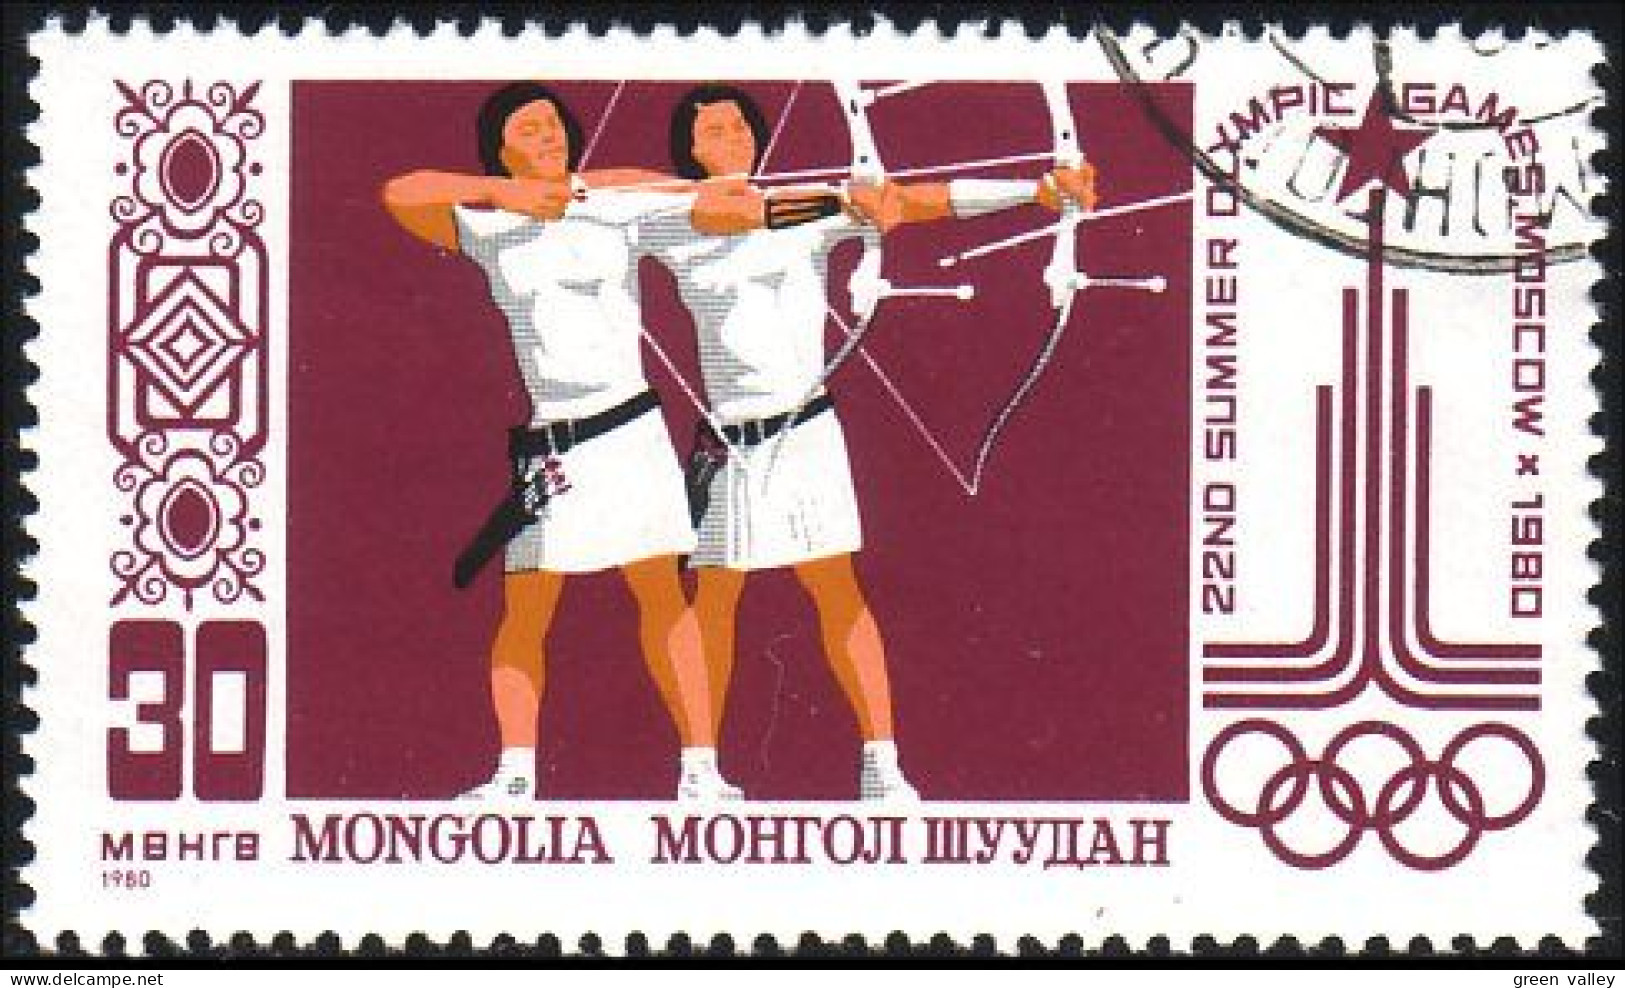 620 Mongolie Jeux De Moscou Tir à L'arc Bow And Arrow Moscow Games (MNG-24) - Tiro Con L'Arco